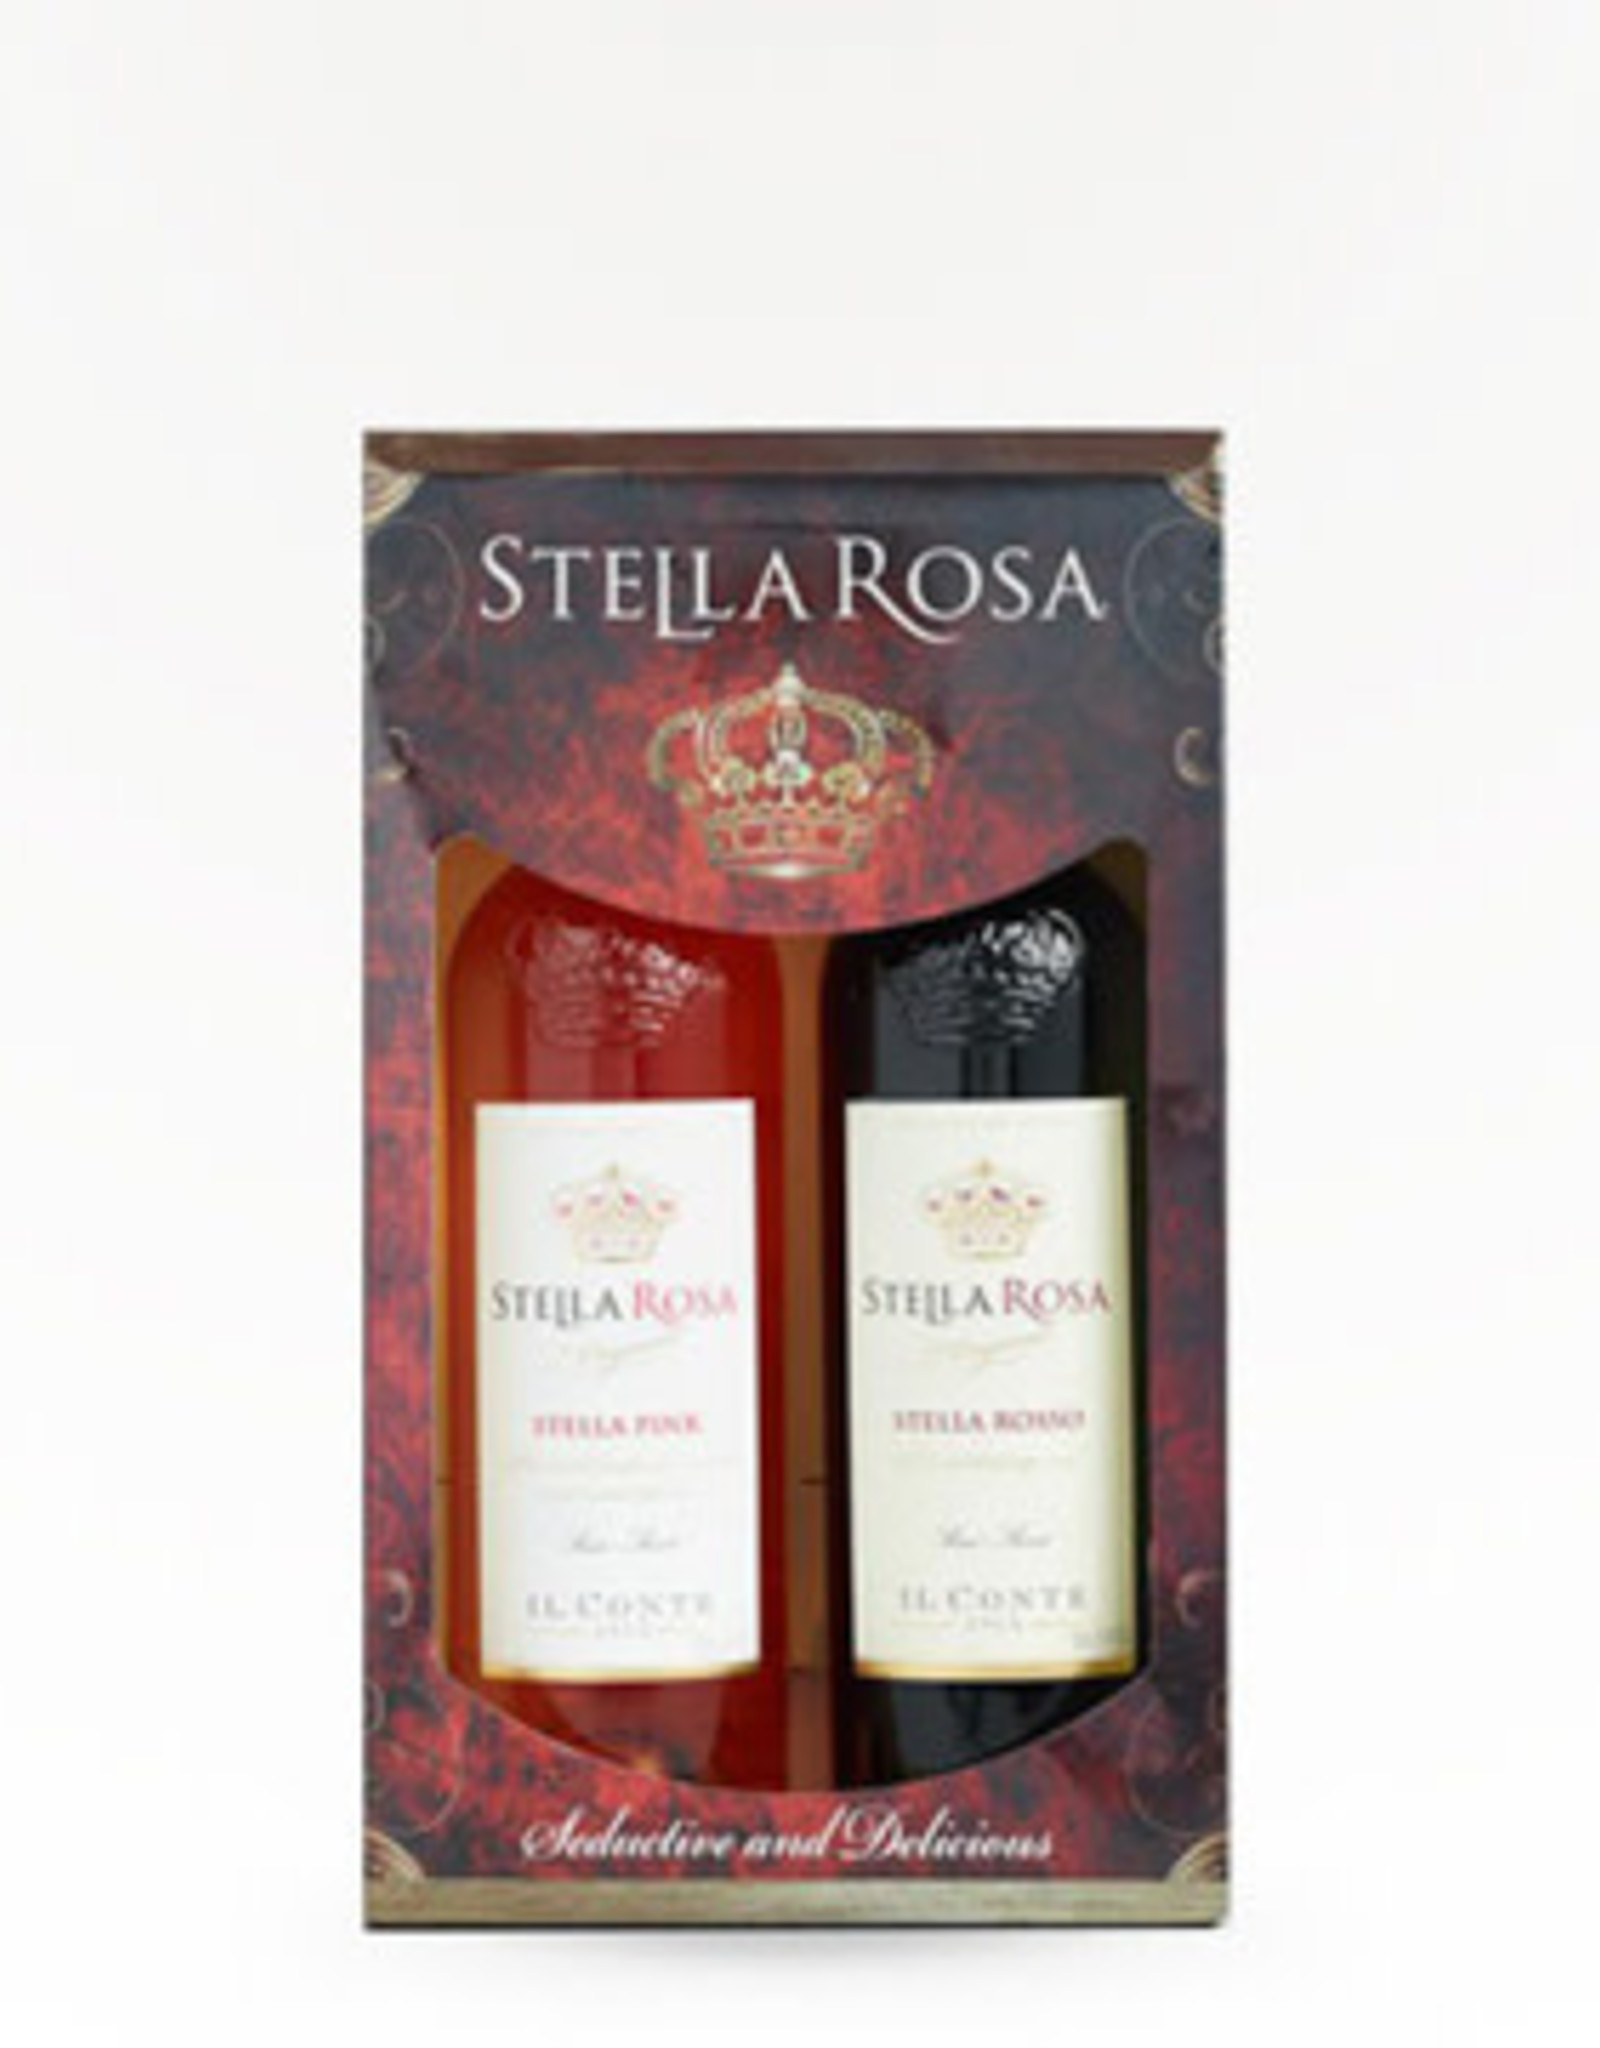 Stella Rosa Stella Rosa  Black &  Rosso Gift Set 750 mL